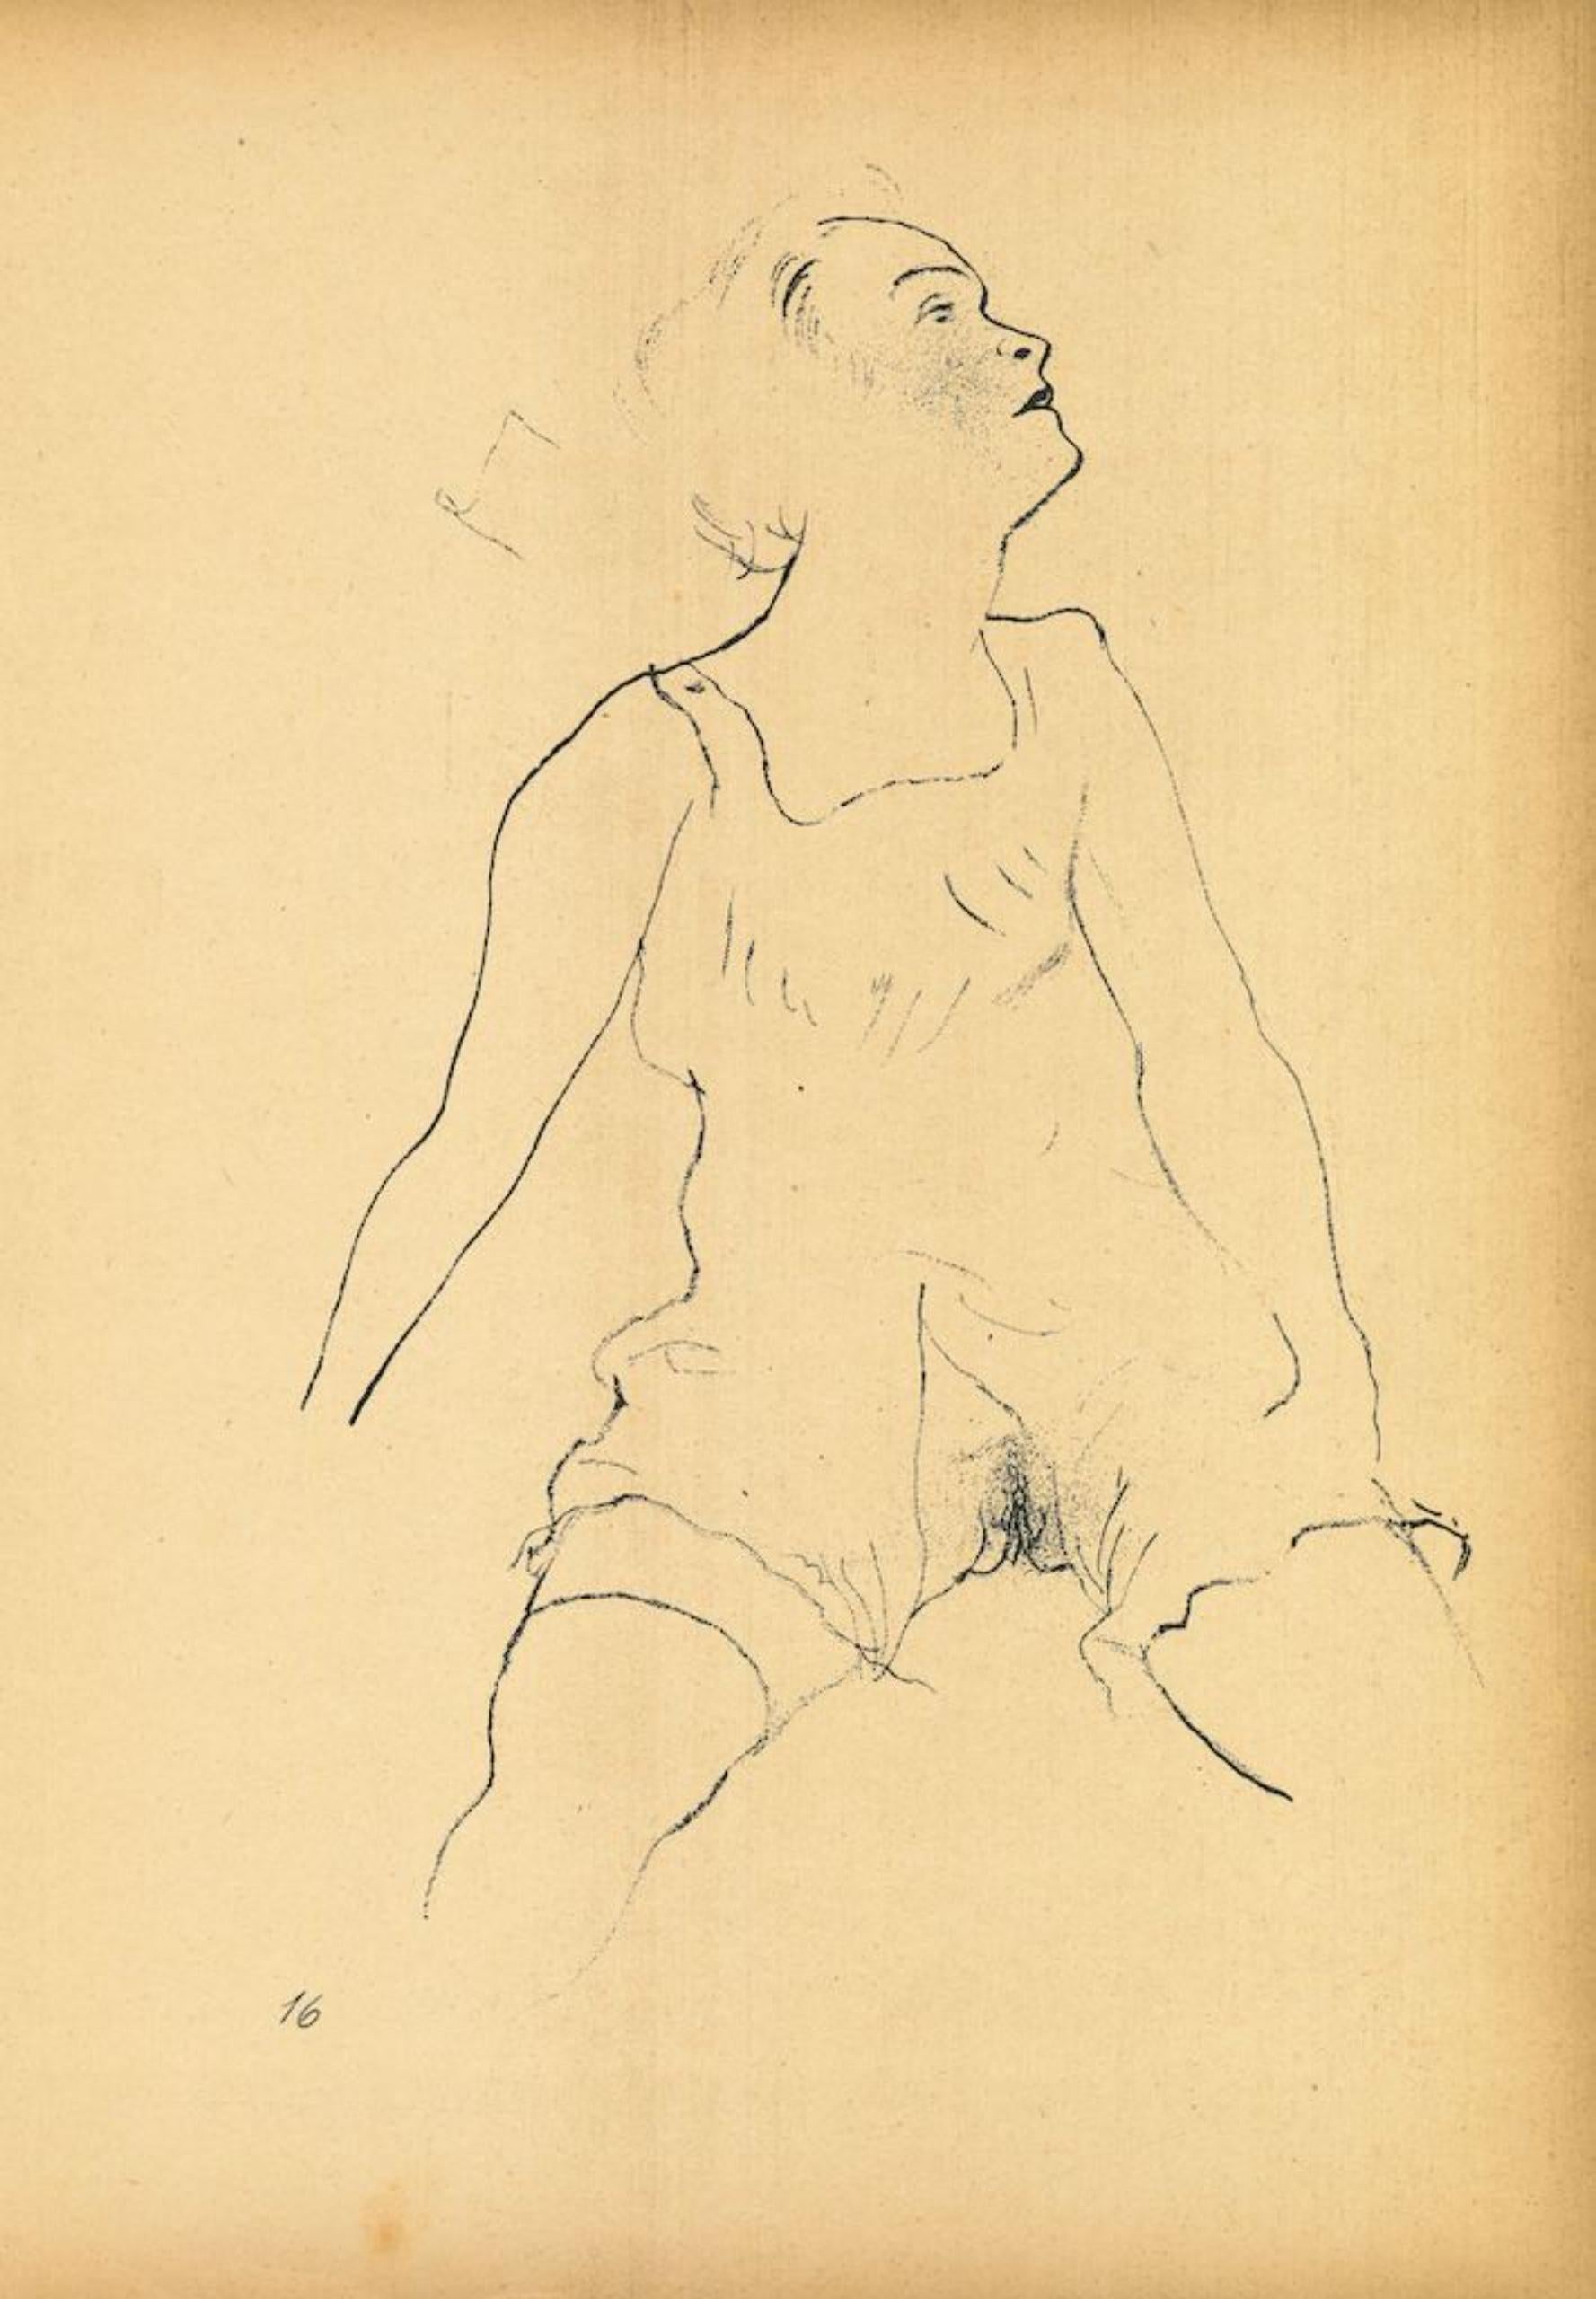 Ecstasy ist eine Original Offset- und Lithographie von George Grosz.

Bei dem Kunstwerk handelt es sich um die Platte.16 aus der 1922/1923 erschienenen Mappe Ecce Homo, Ausgabe Der Malik-Verlag Berlin.

Auf der Platte am unteren Rand nummeriert.